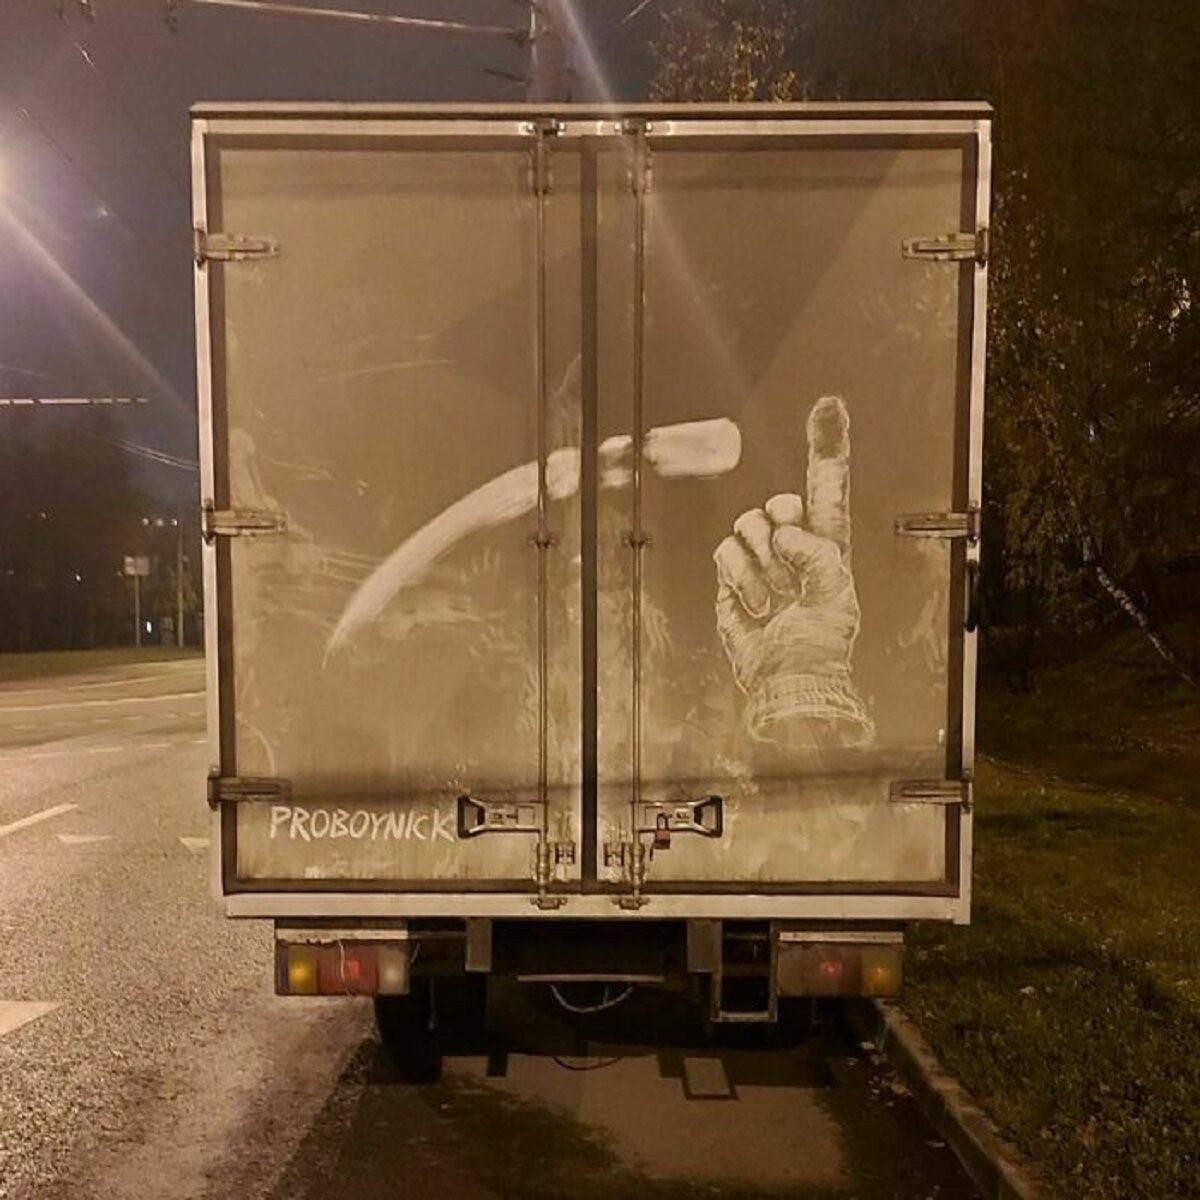 Nikita Golubev artista russa cria desenhos incriveis em caminhoes e tecnica chama atencao 5